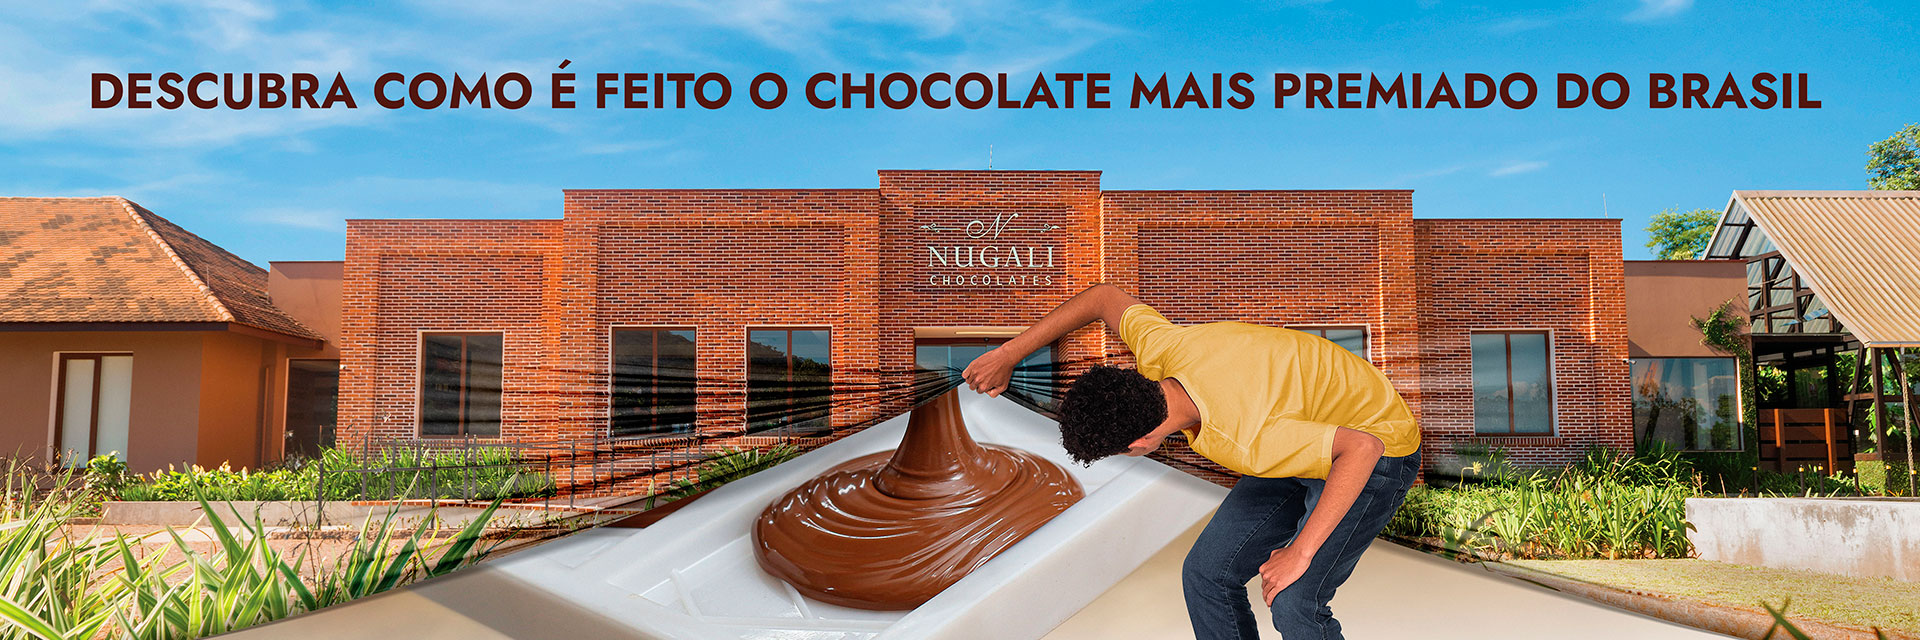 Descubra como é feito o chocolate mais premiado do Brasil. Tour interativo fábrica de chocolate Nugali